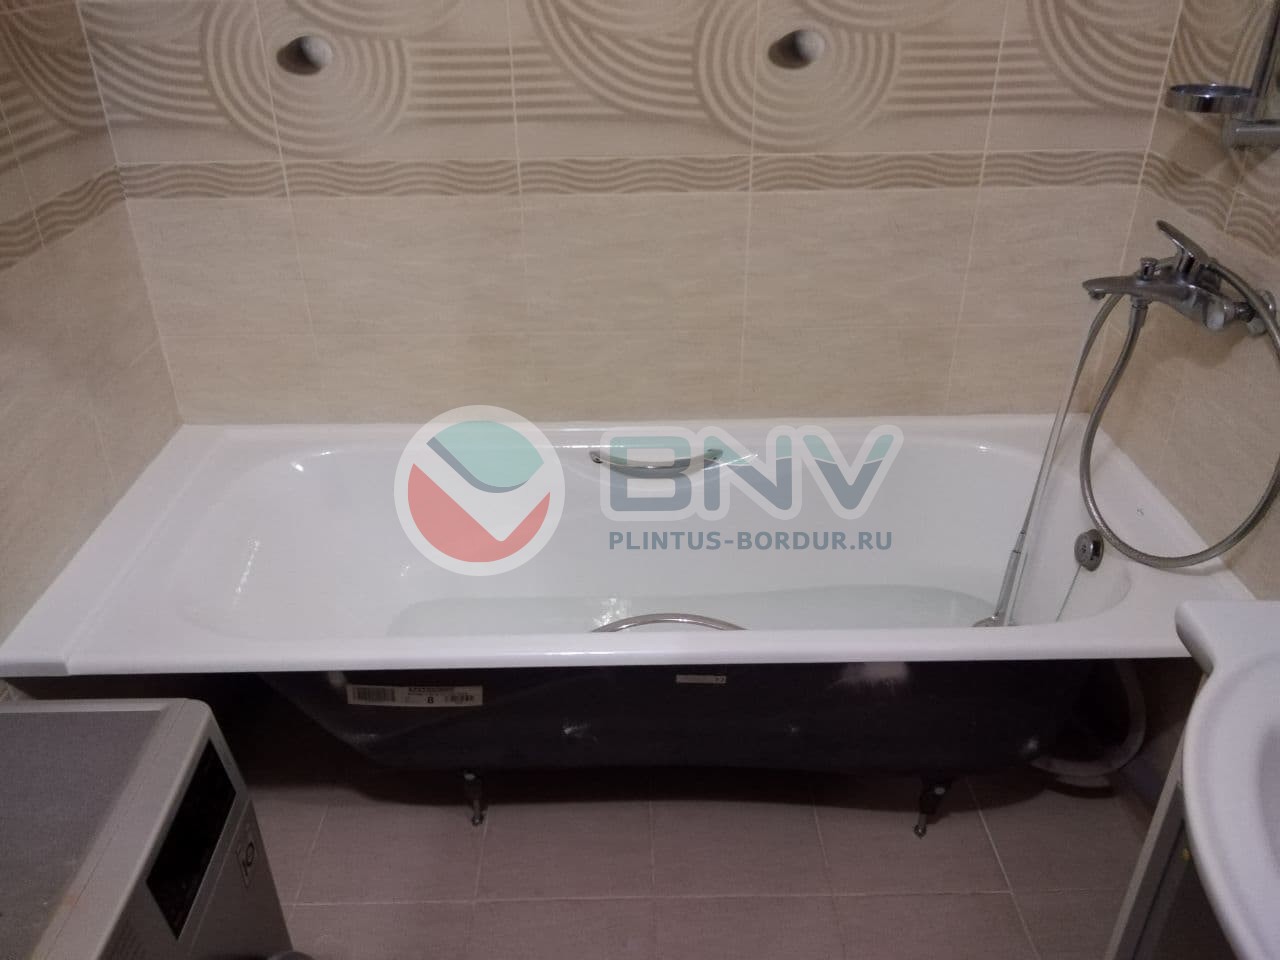 Акриловый бордюр для ванной ПШ1296 интернет-магазин BNV